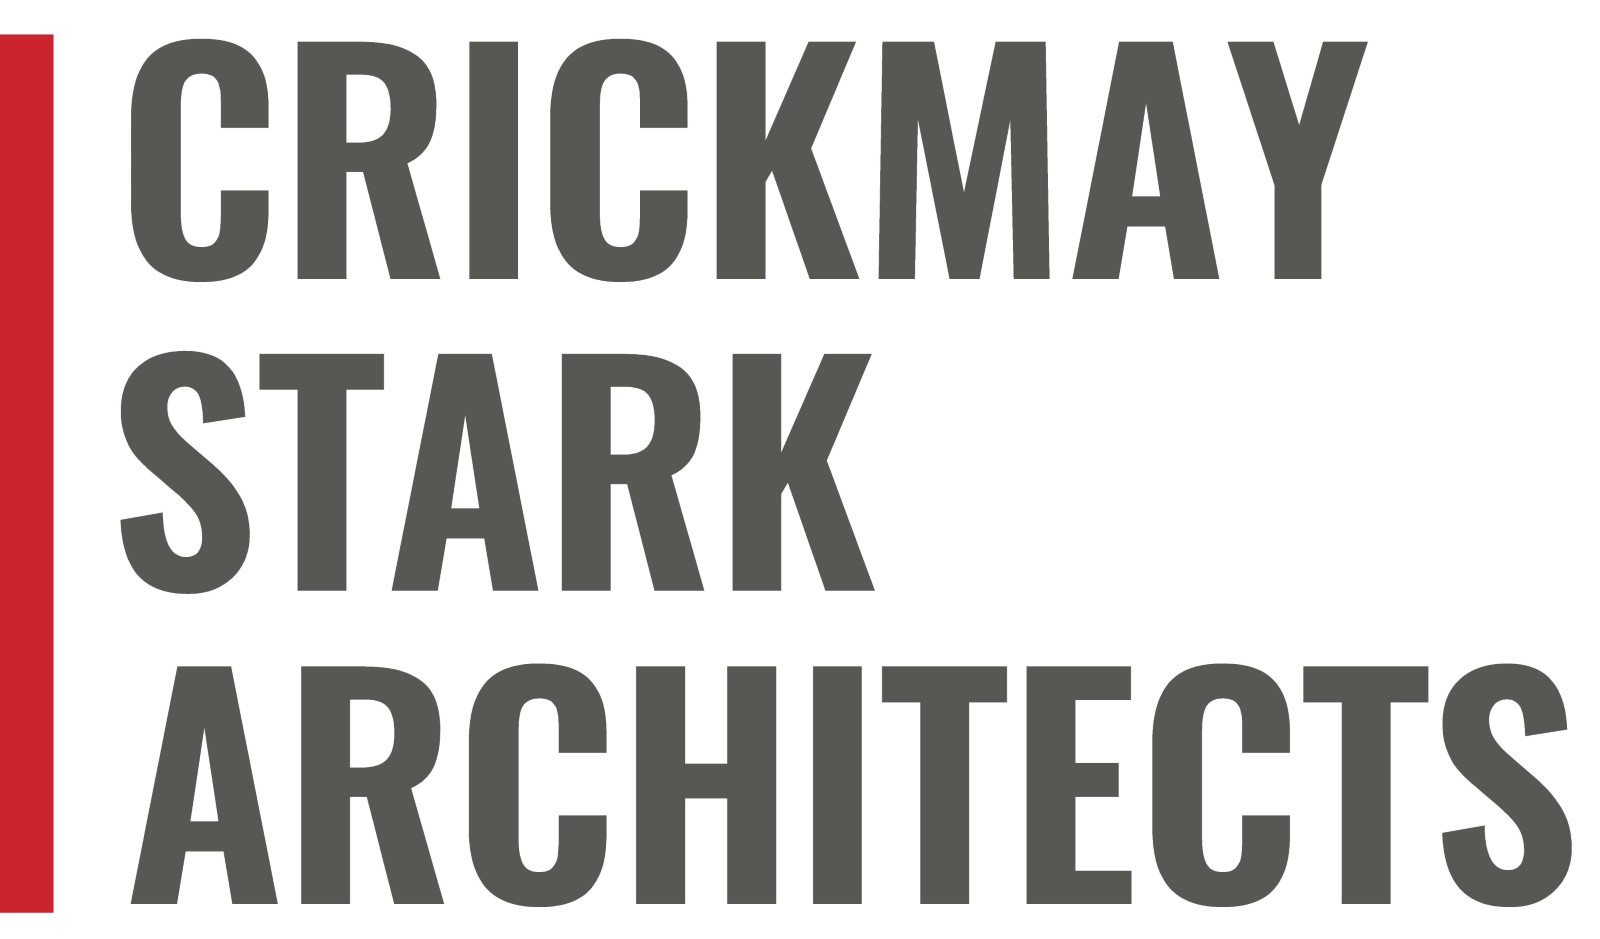 Crickmay Stark Architects Logo (1600×1200)